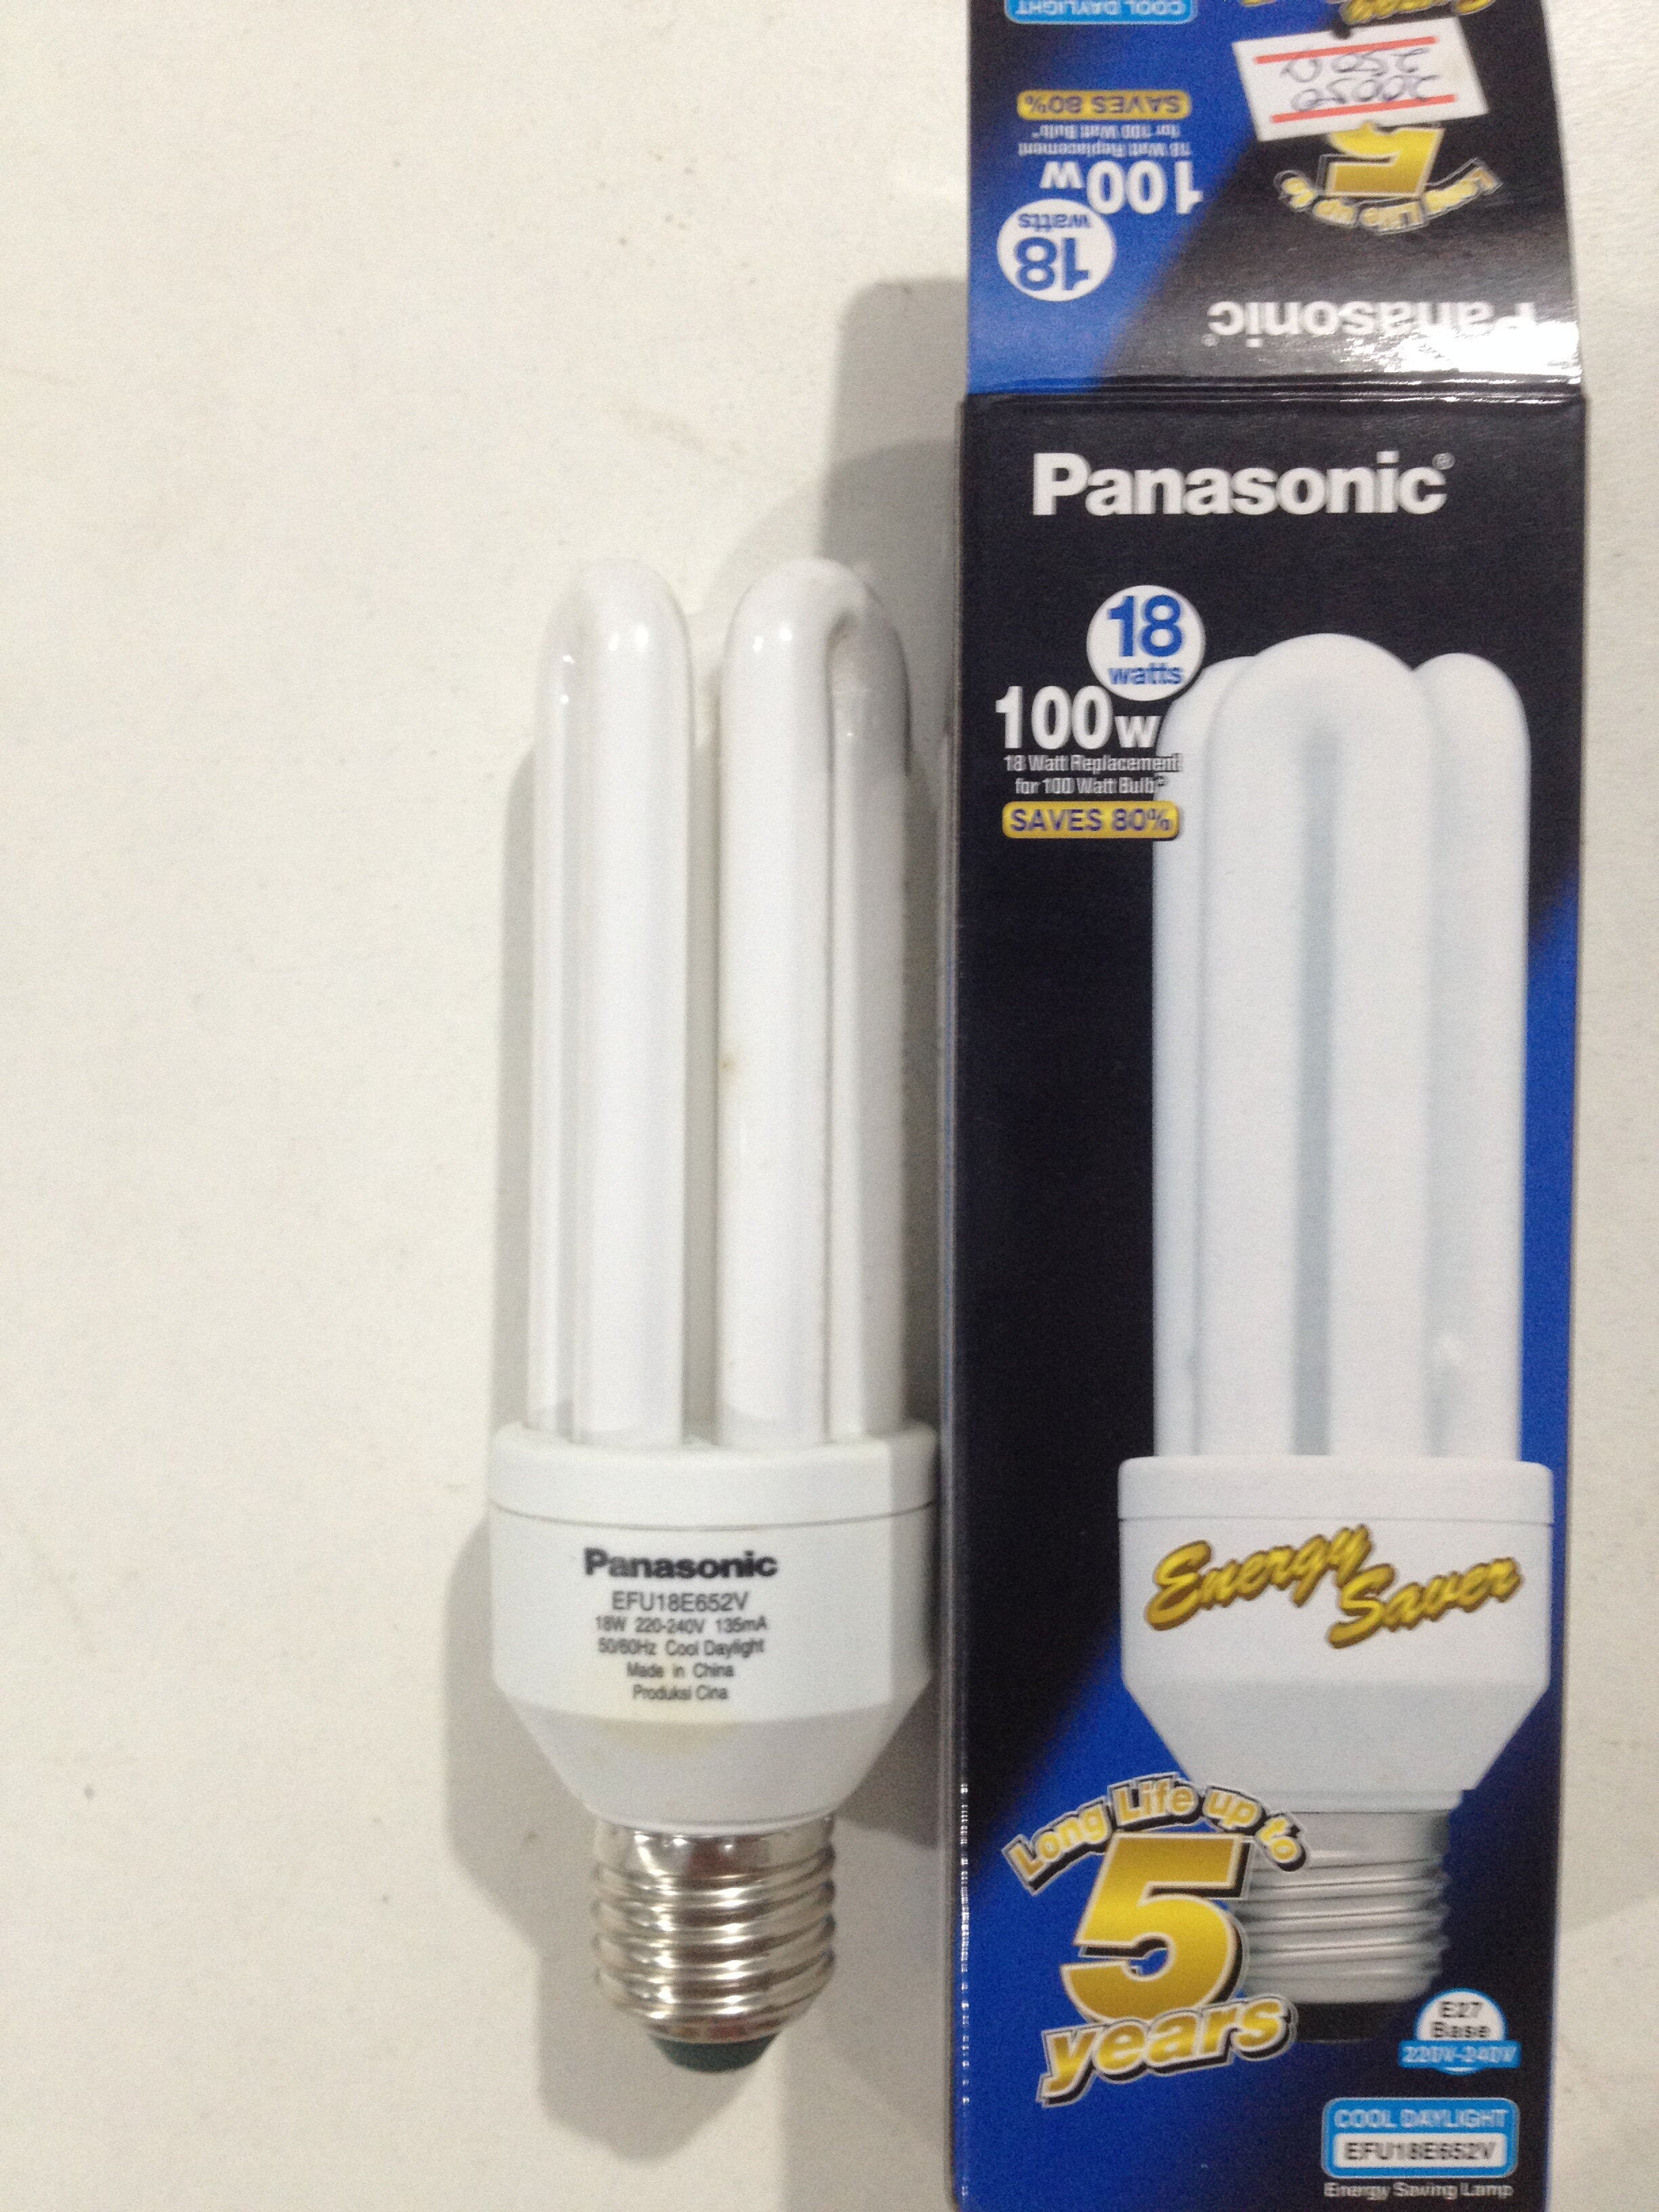 หลอดไฟตะเกียบ แบบเกลียว Panasonic 18W = 100W Cool Day light 18W  EFU18E652V หลอดประหยัดไฟ